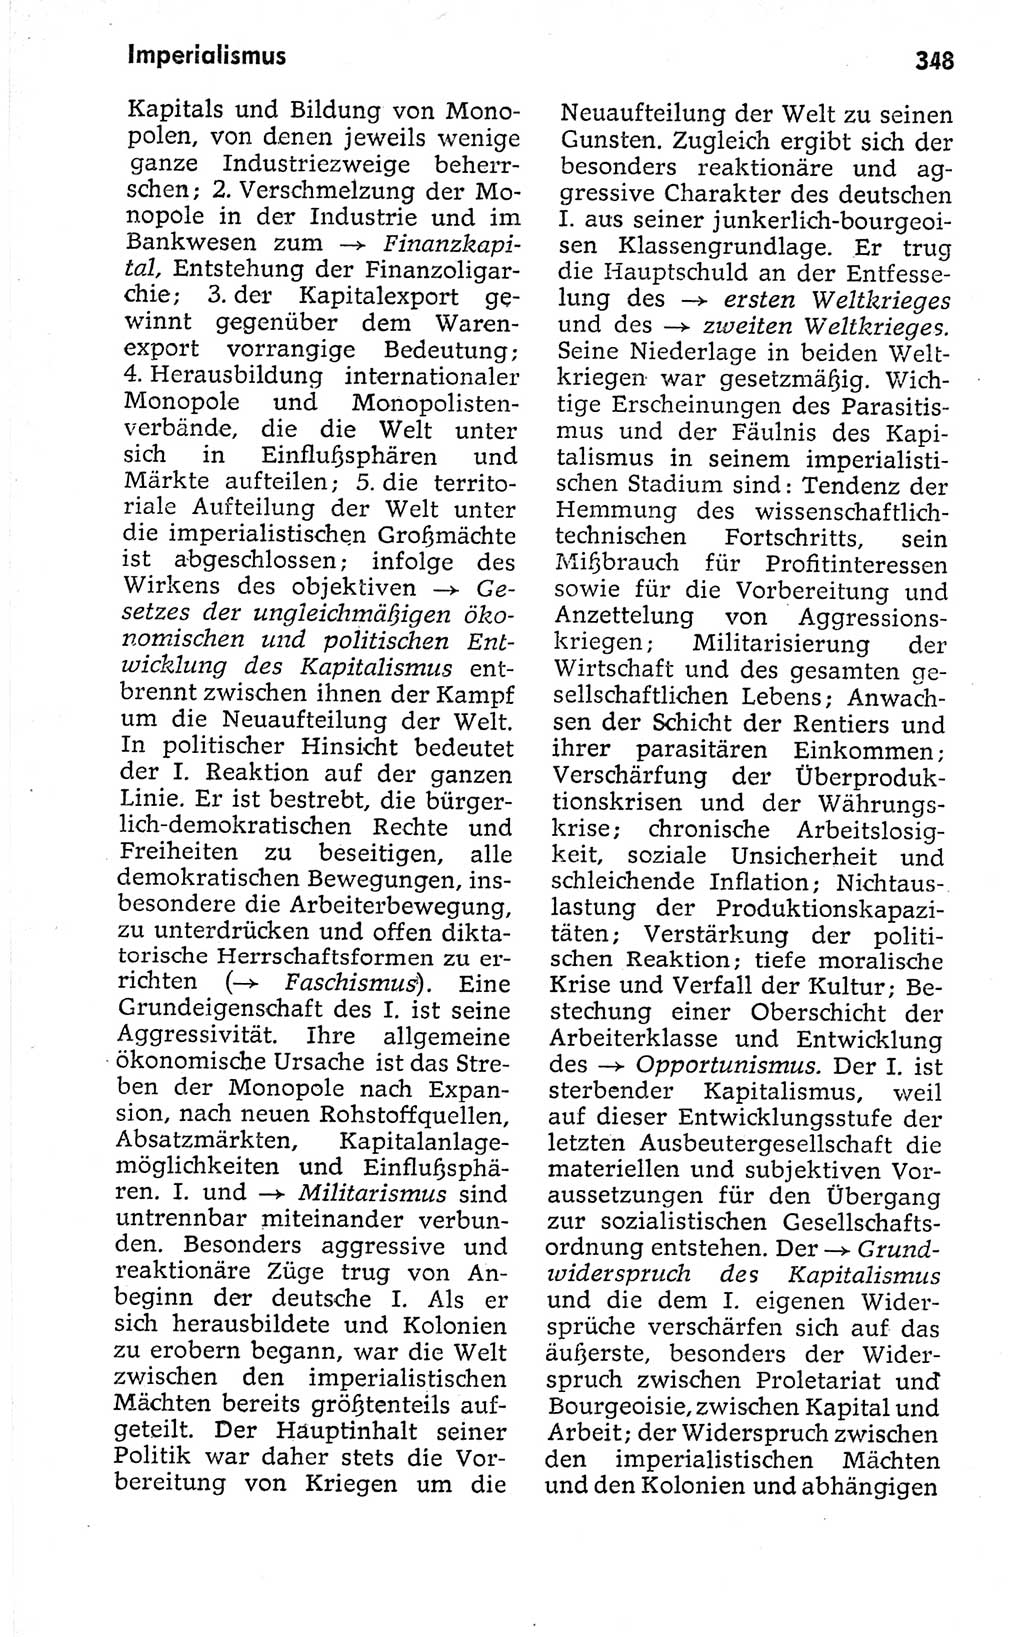 Kleines politisches Wörterbuch [Deutsche Demokratische Republik (DDR)] 1973, Seite 348 (Kl. pol. Wb. DDR 1973, S. 348)